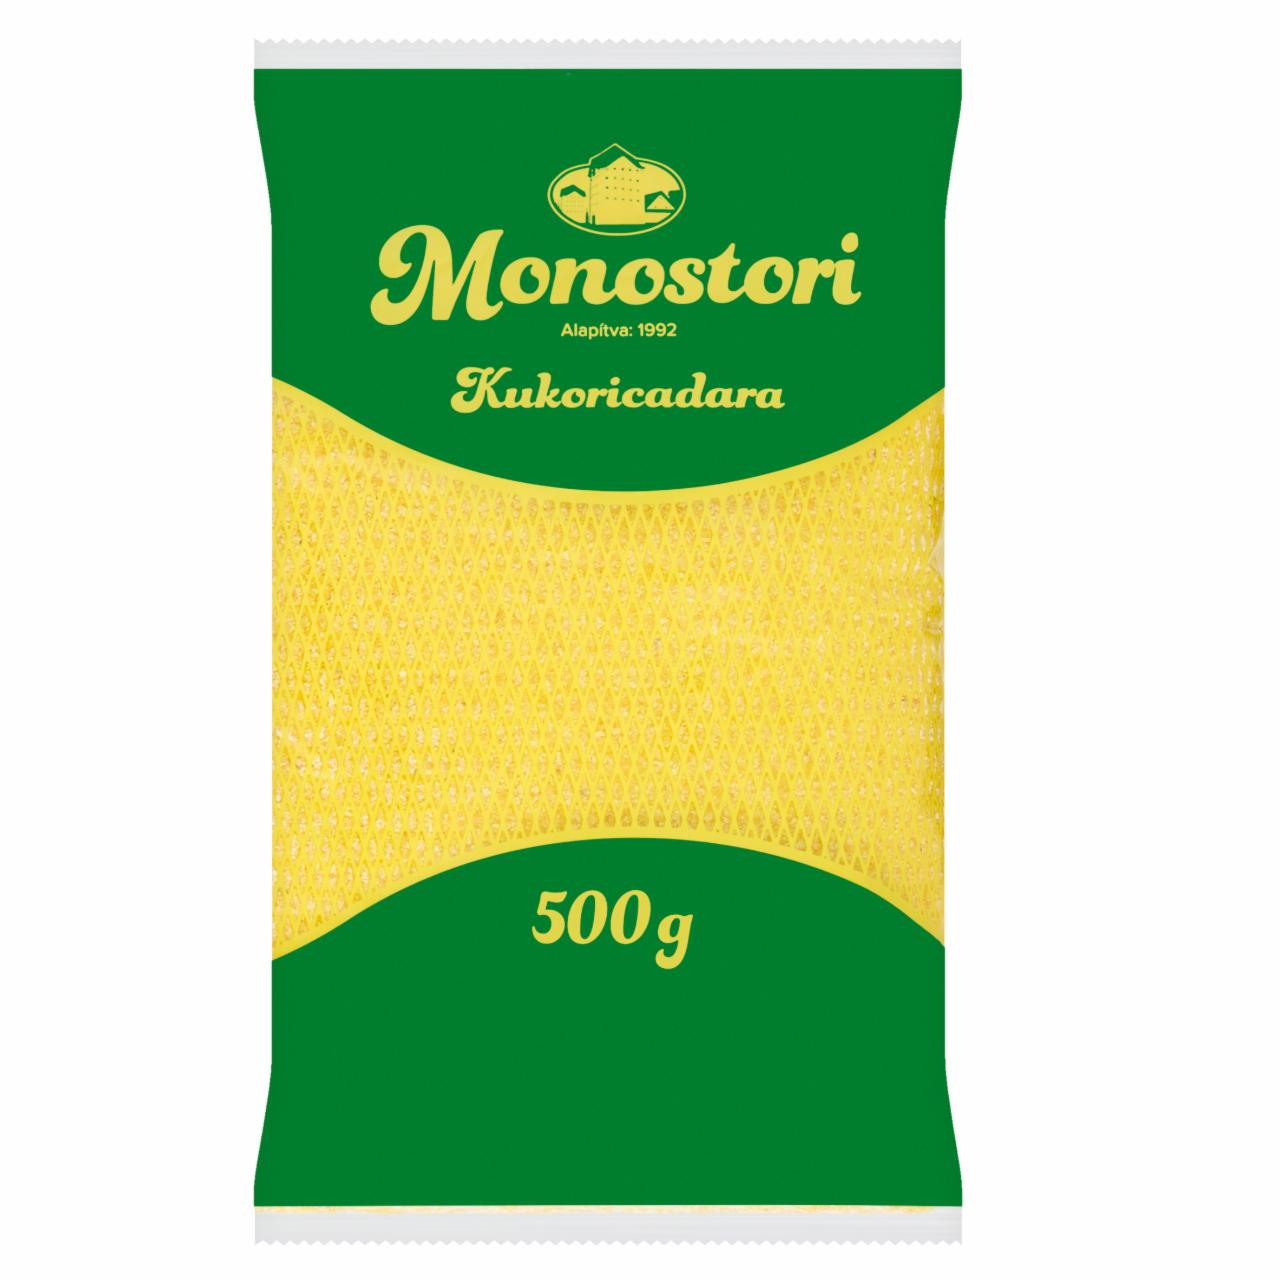 Képek - Monostori kukoricadara 500 g